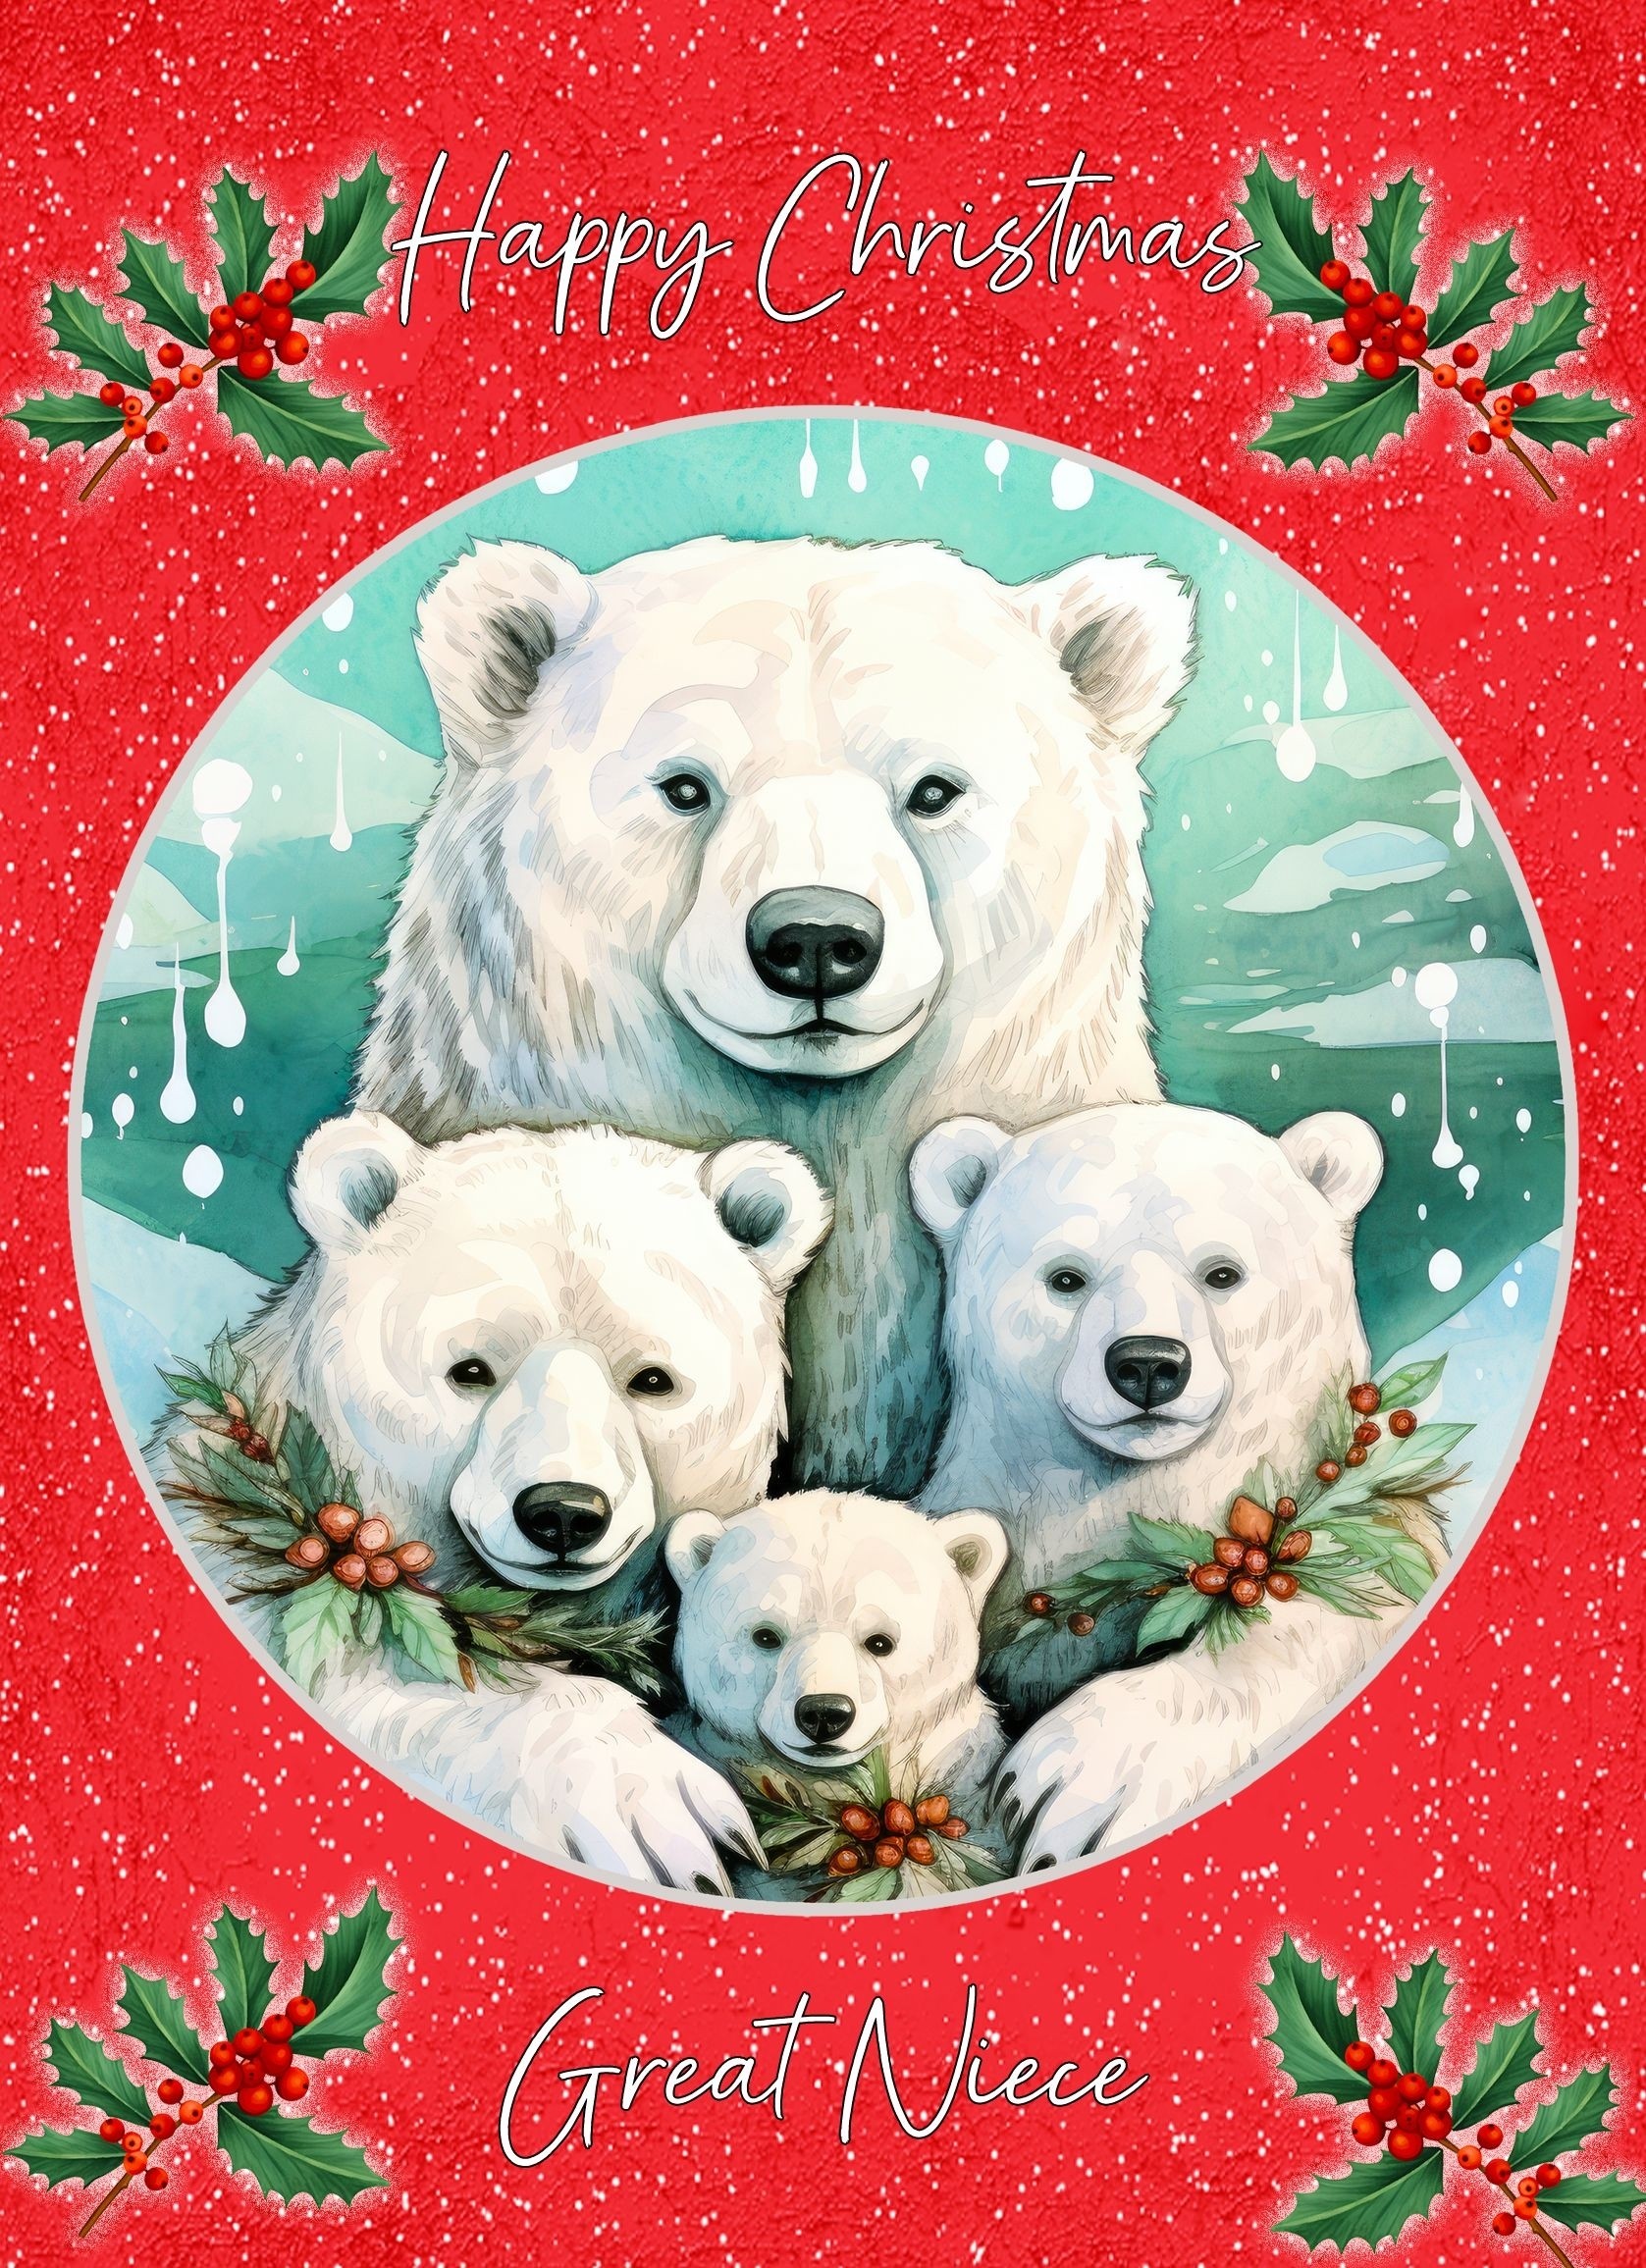 Christmas Card For Great Niece (Globe, Polar Bear Family)